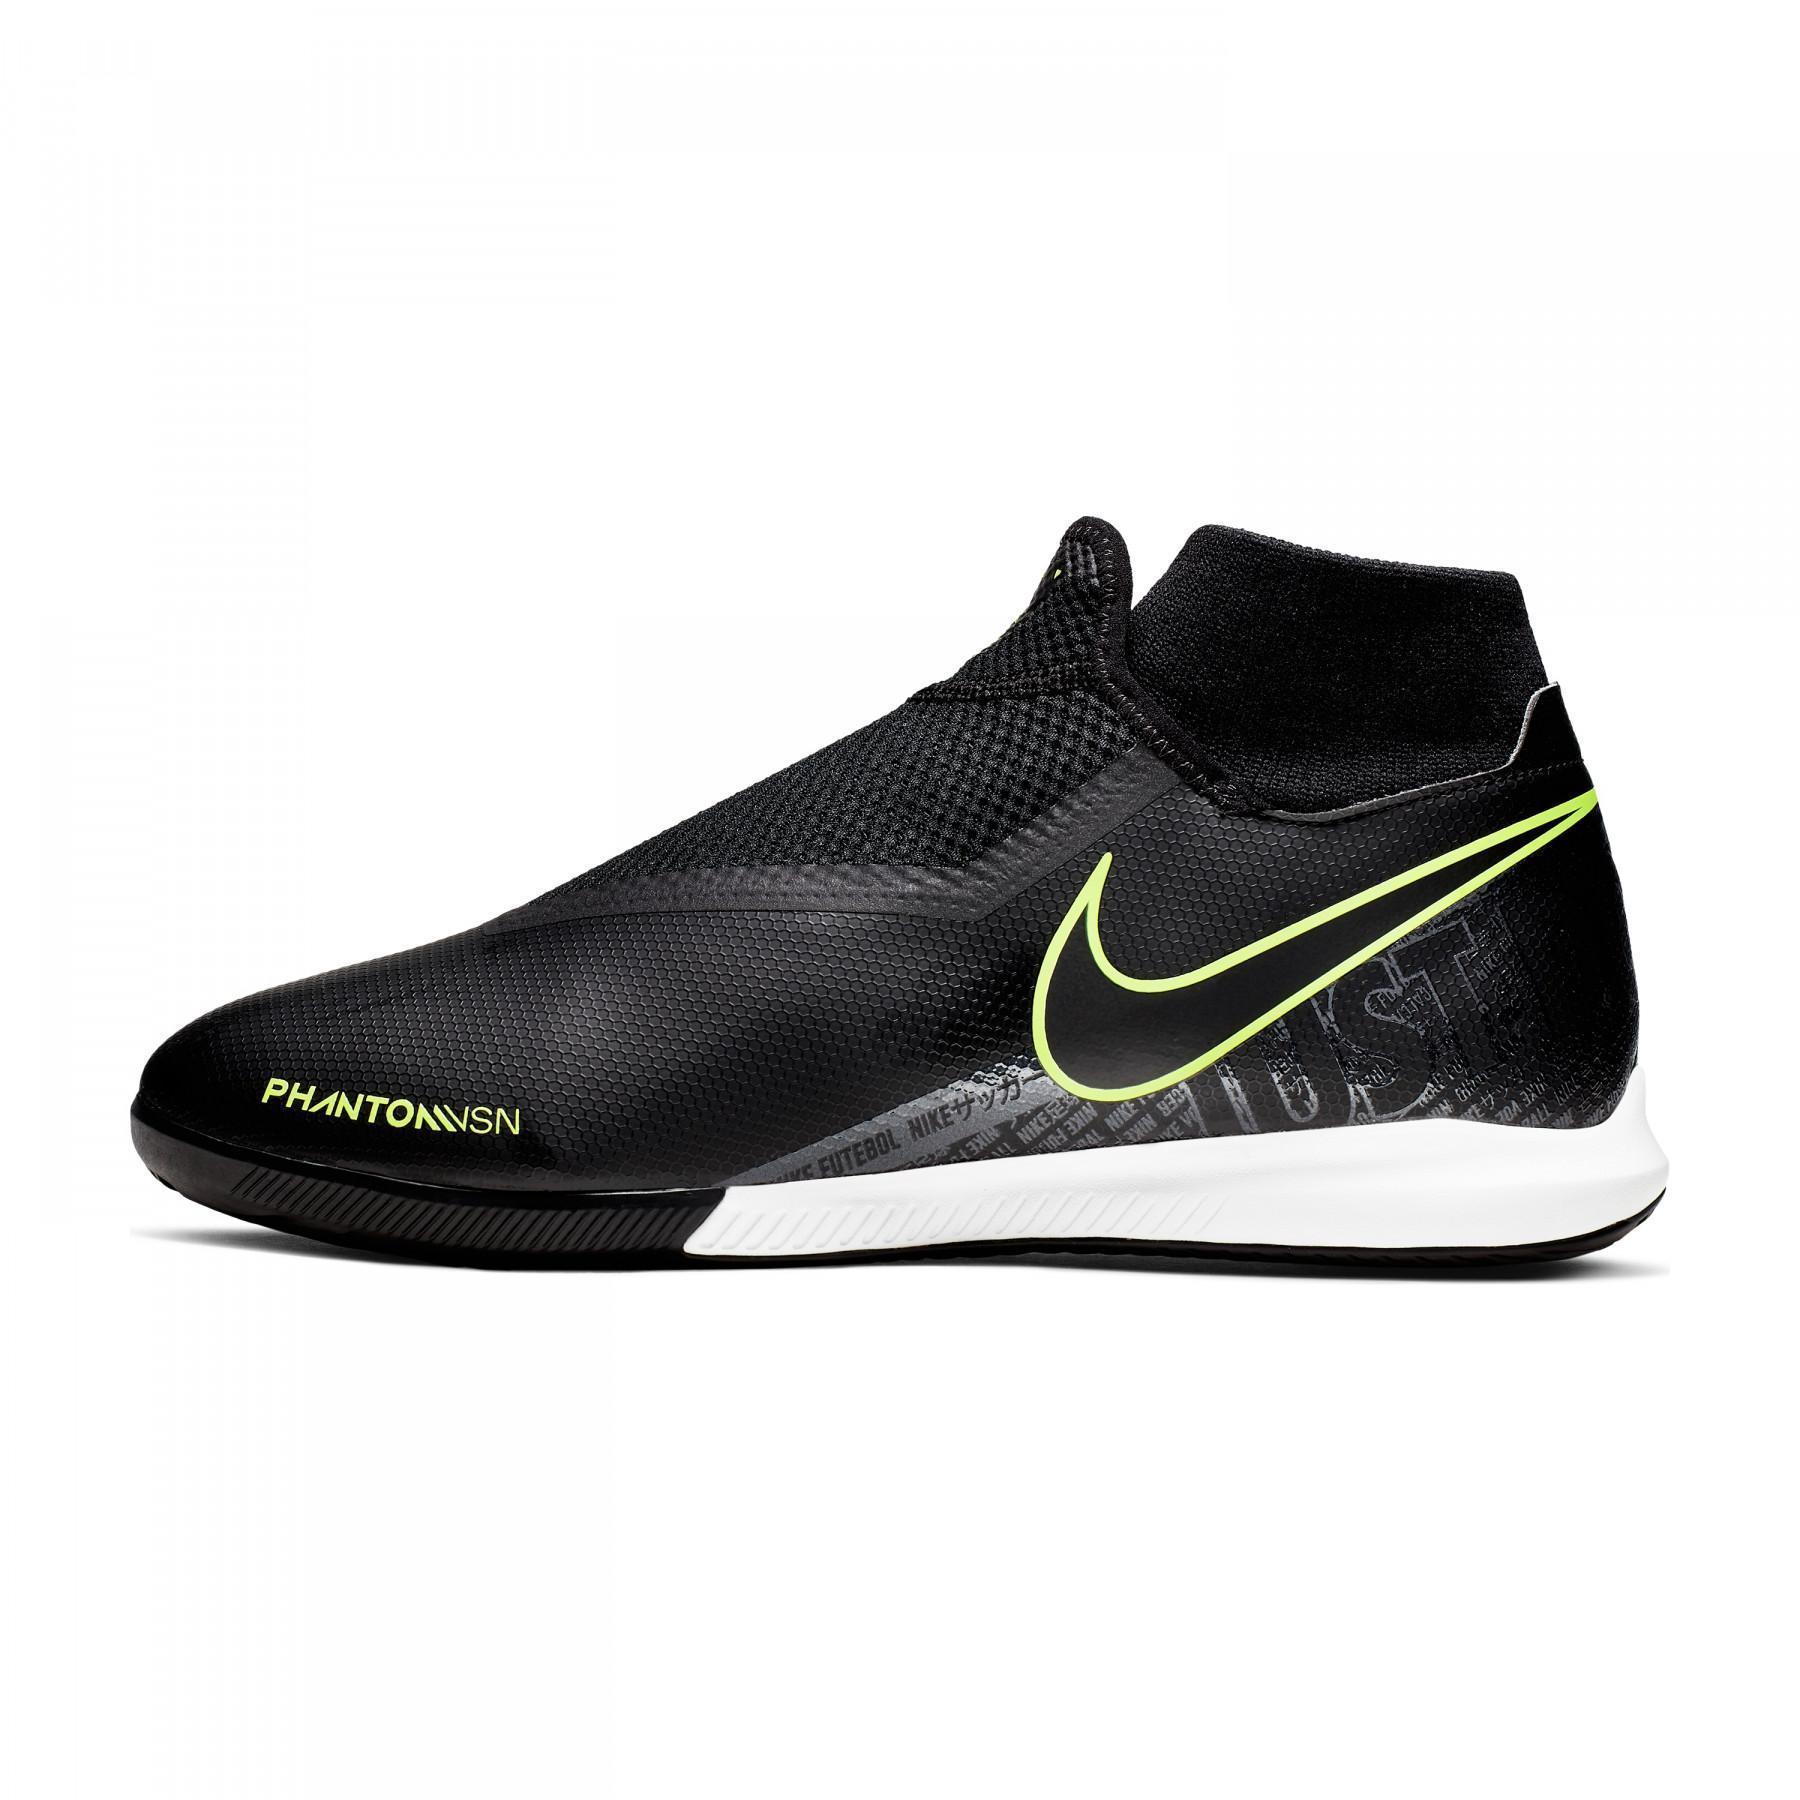 Schuhe Nike Phantom Vision Dynamic Fit IC